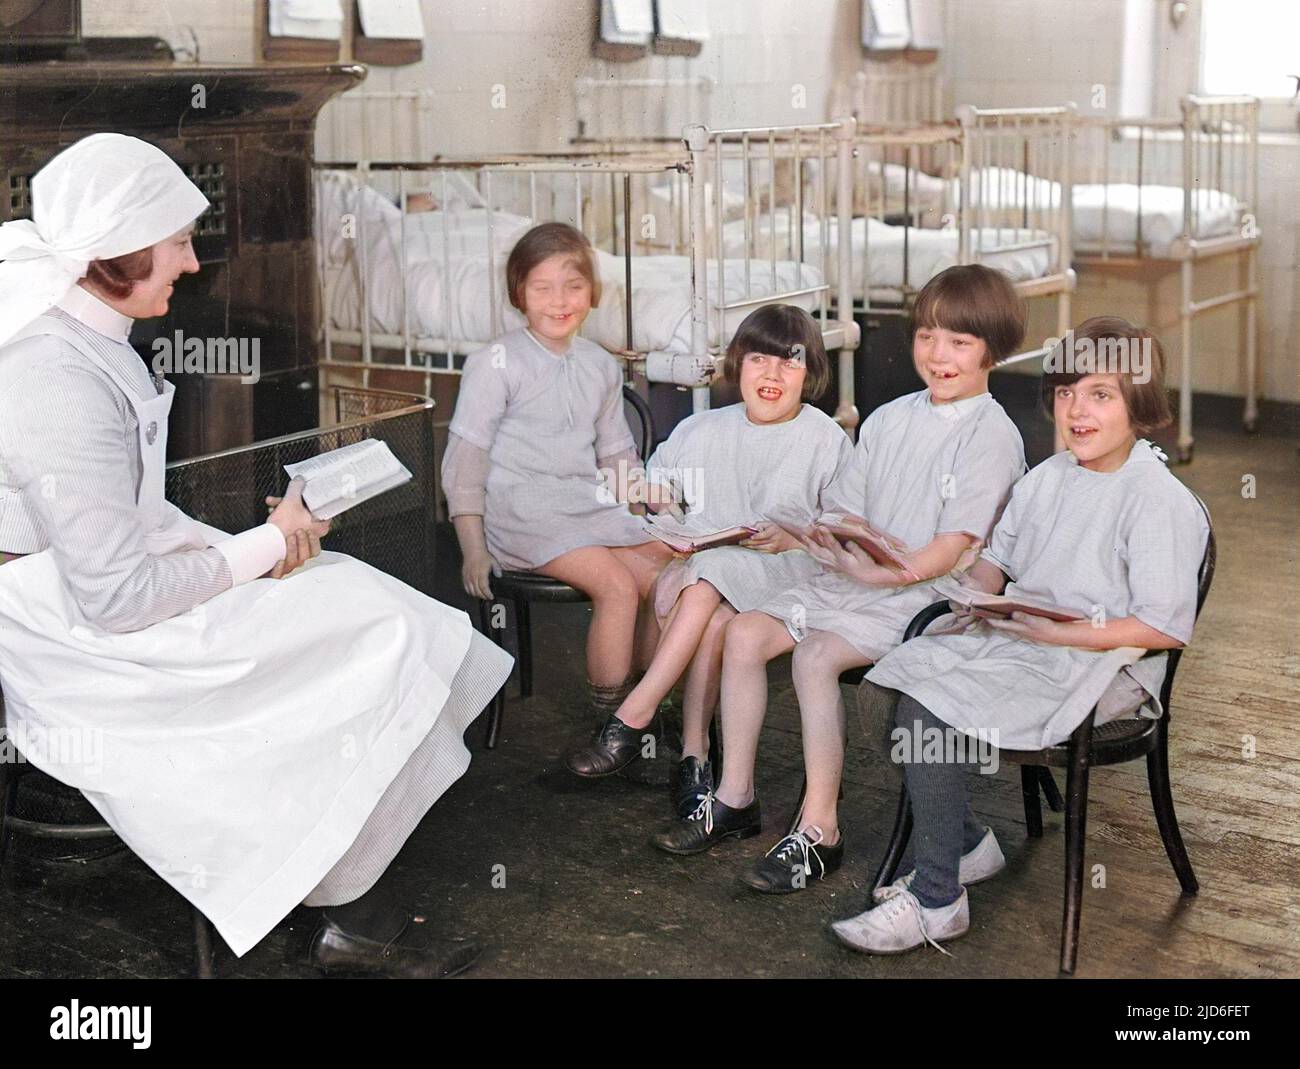 Quatre petites filles bénéficiant d'une leçon de lecture à l'hôpital, avec leur infirmière doublant en tant qu'enseignante. Version colorisée de : 10164371 Date : début 1930s Banque D'Images